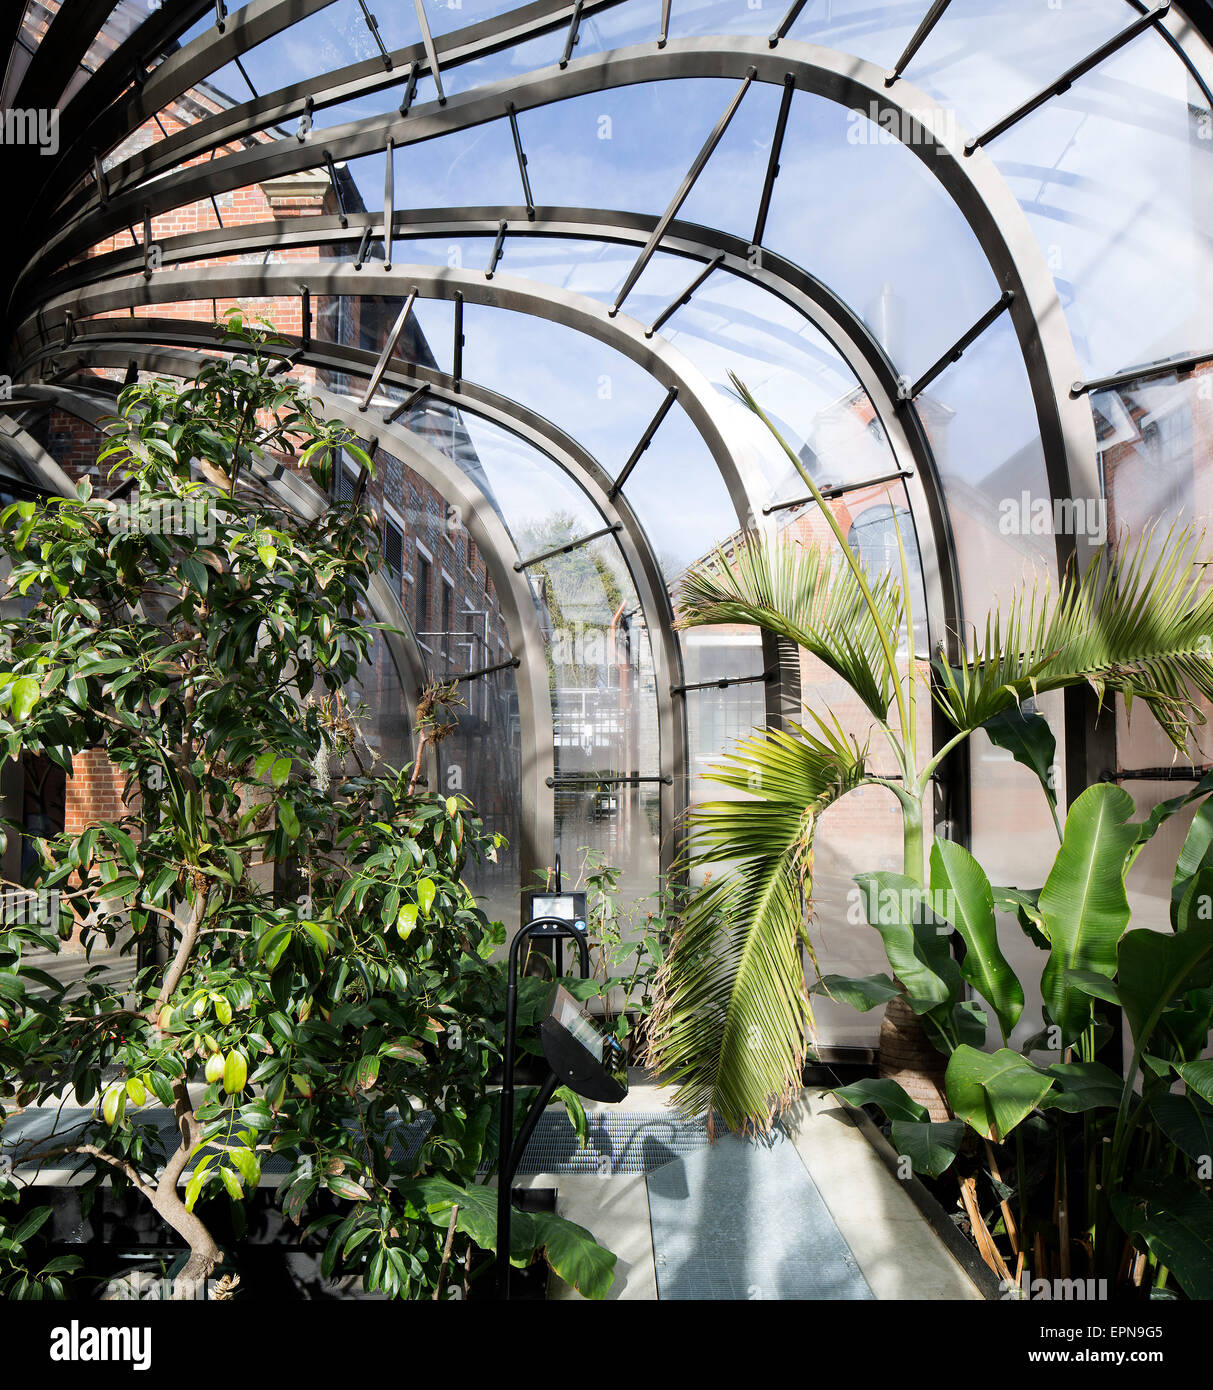 Vue intérieure d'une maison de verre. La Distillerie de Bombay Sapphire, Laverstoke, Royaume-Uni. Architecte : Heatherwick Studio, 2014. Banque D'Images